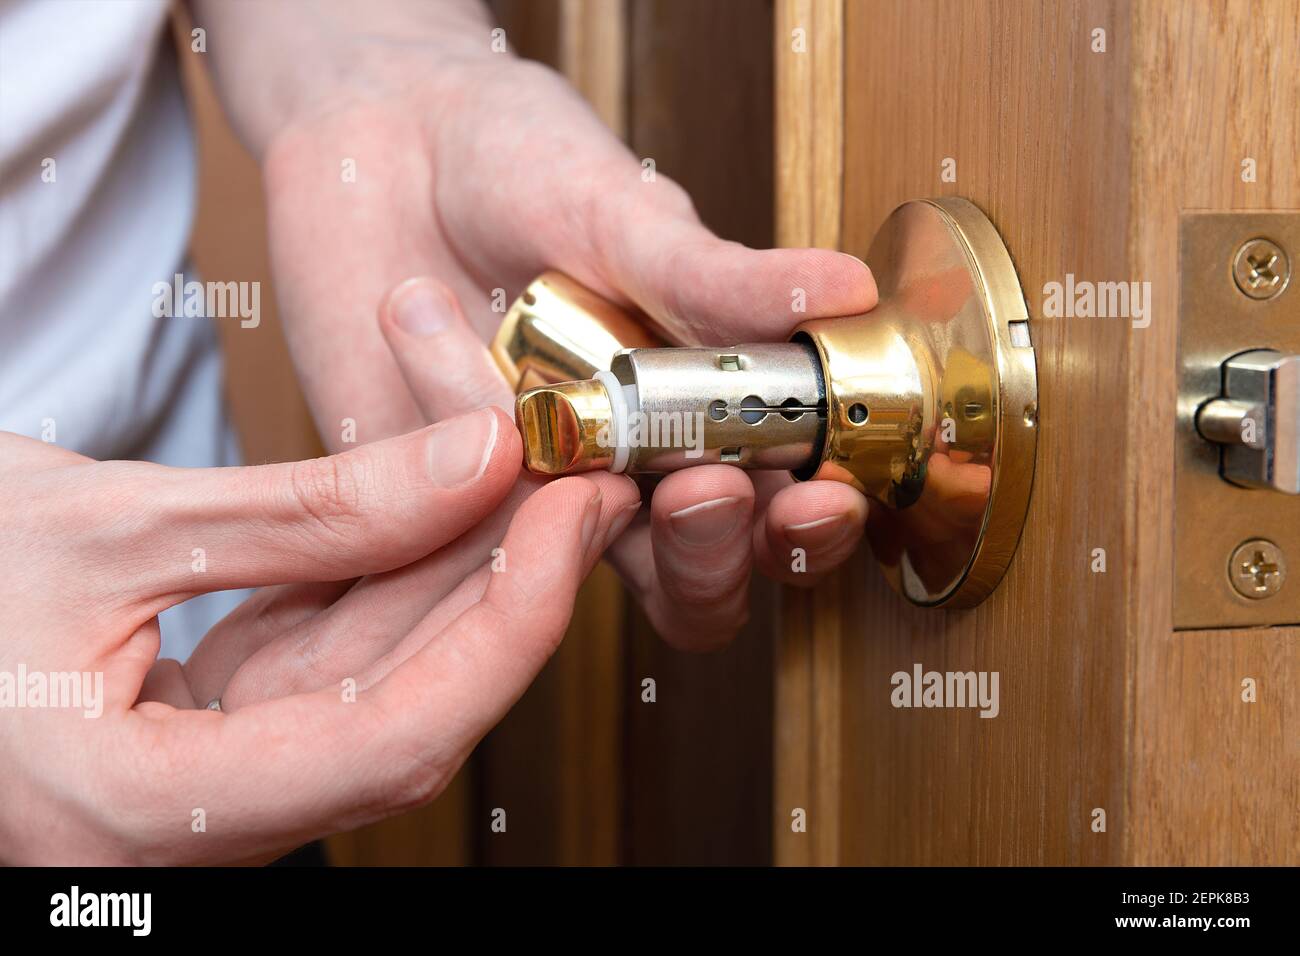 Install the door handle with a lock, man hands repair door knob, repair locking mechanism Stock Photo